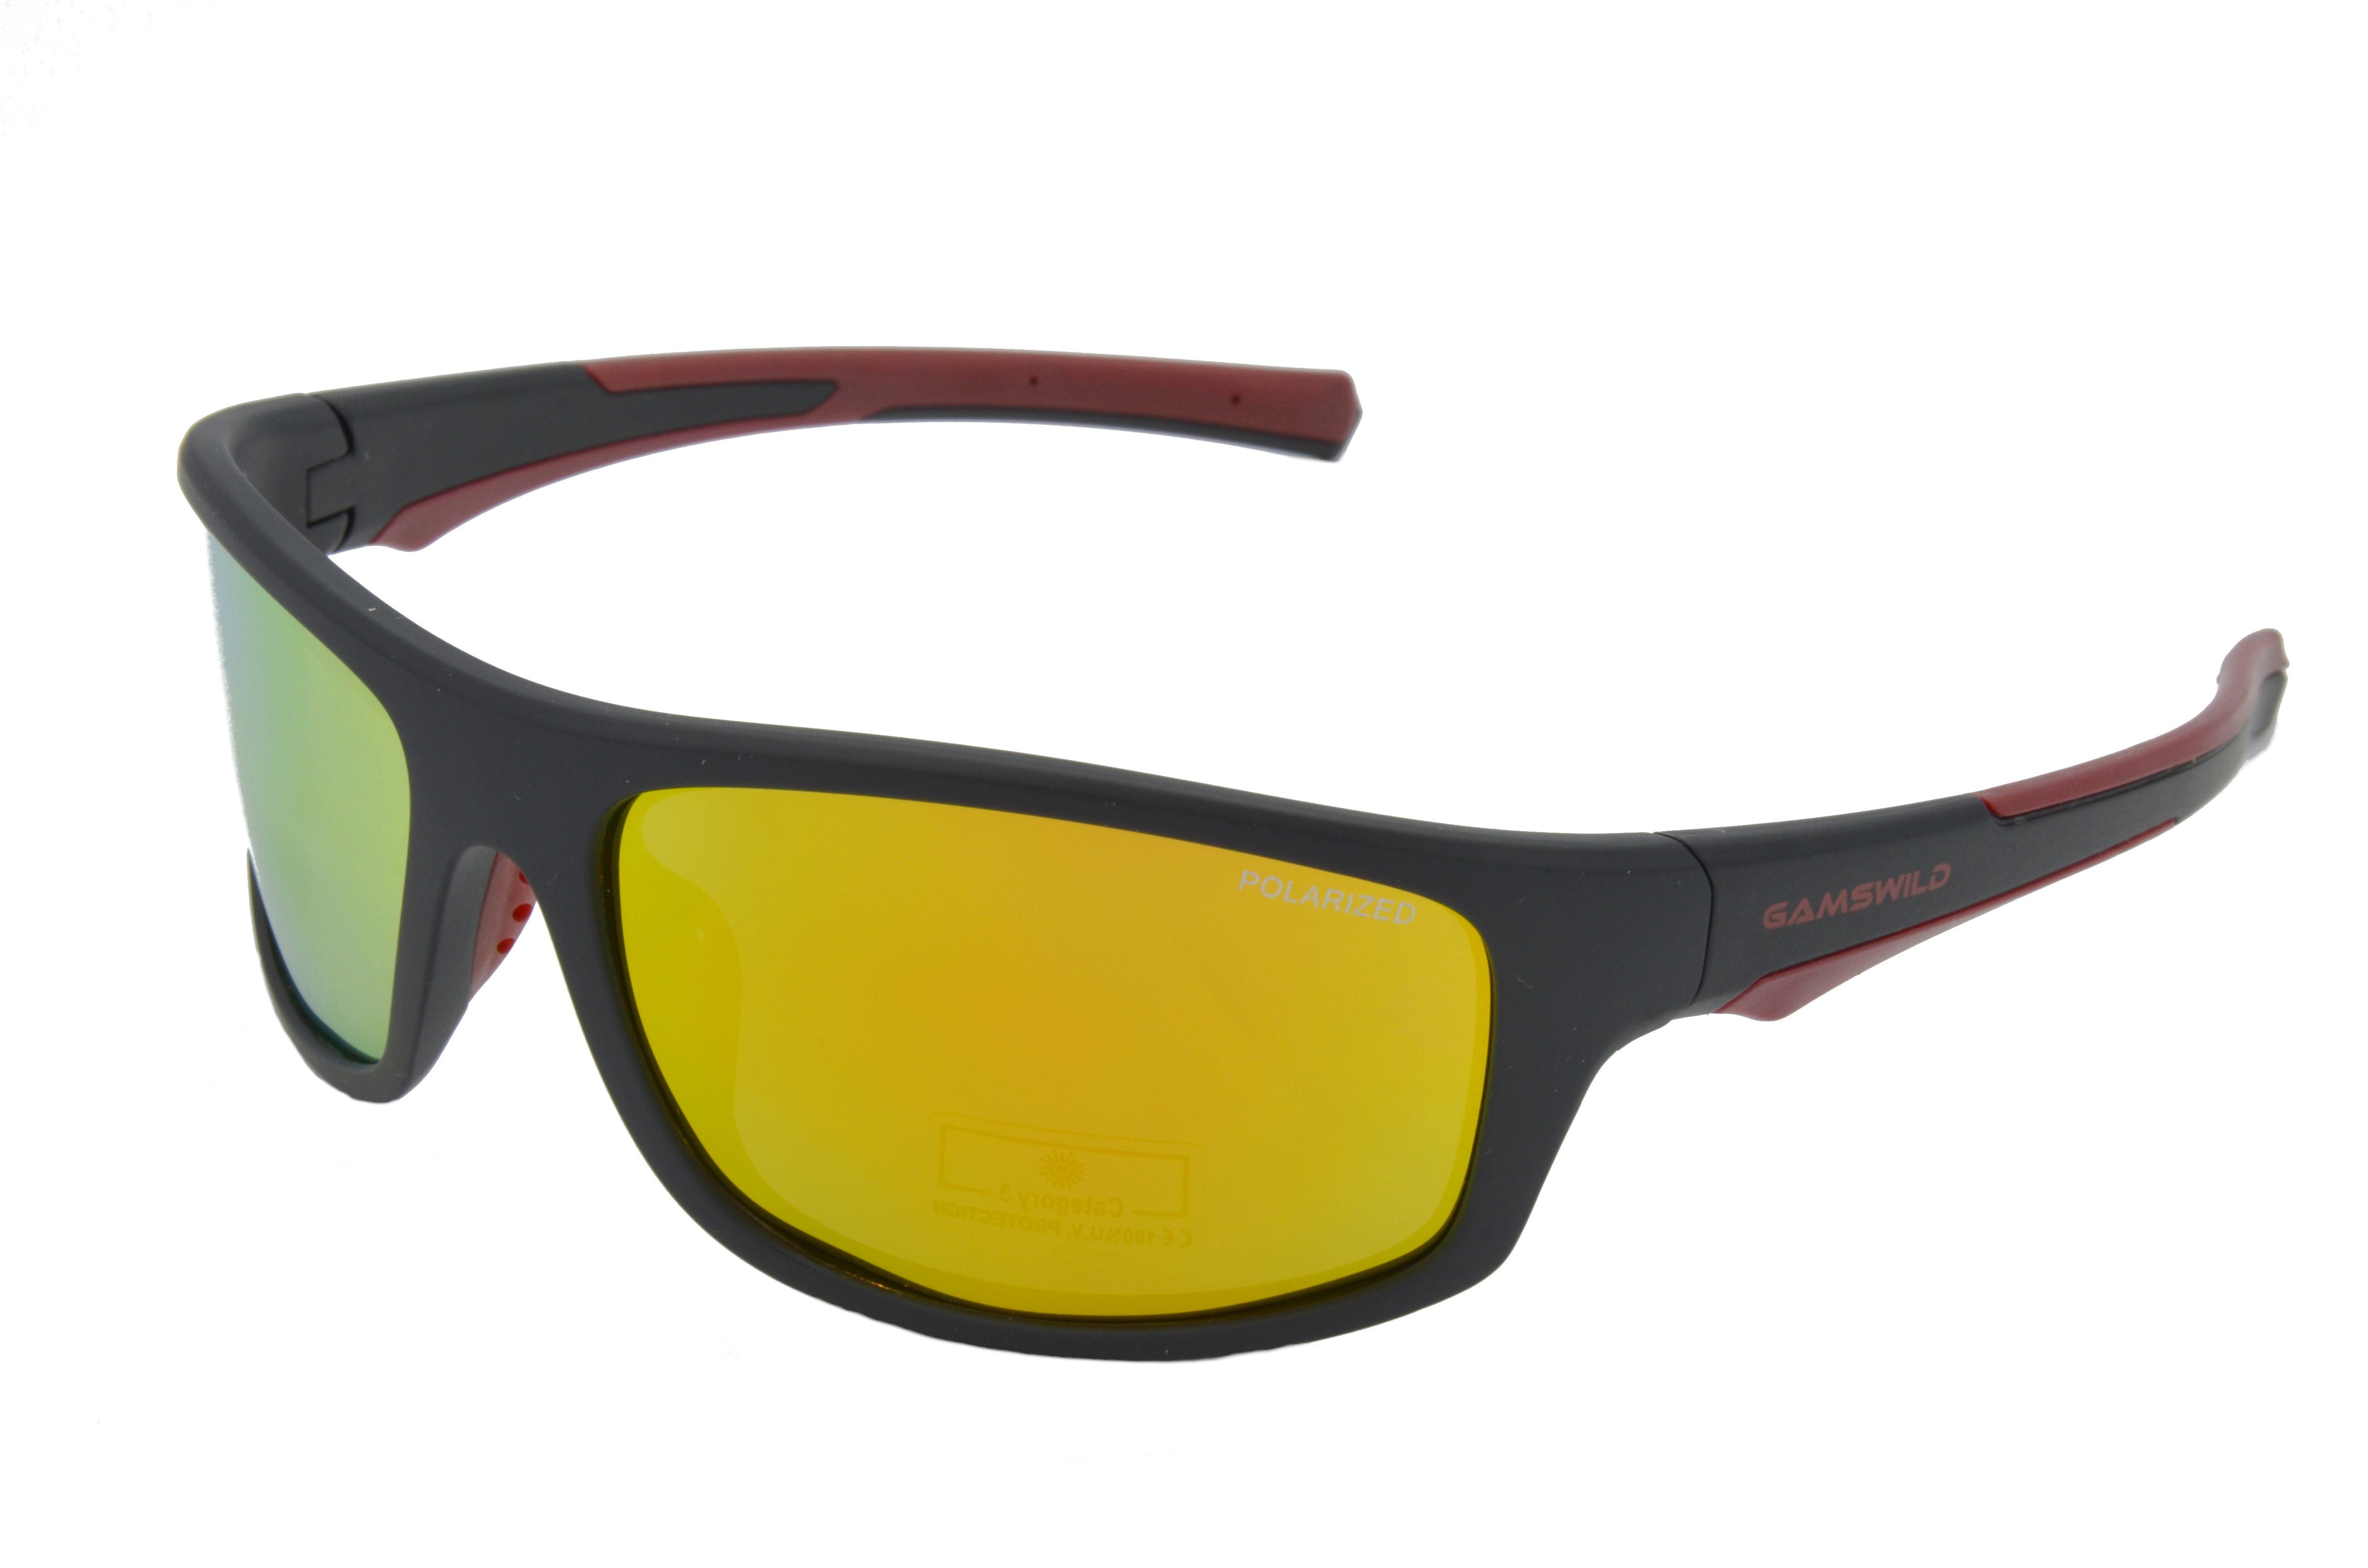 Gamswild Sportbrille WS2238 Sonnenbrille Damen Herren Fahrradbrille Skibrille Unisex, TR90 / polarisiert, grau, blau, schwarz-rot, -orange, -grün